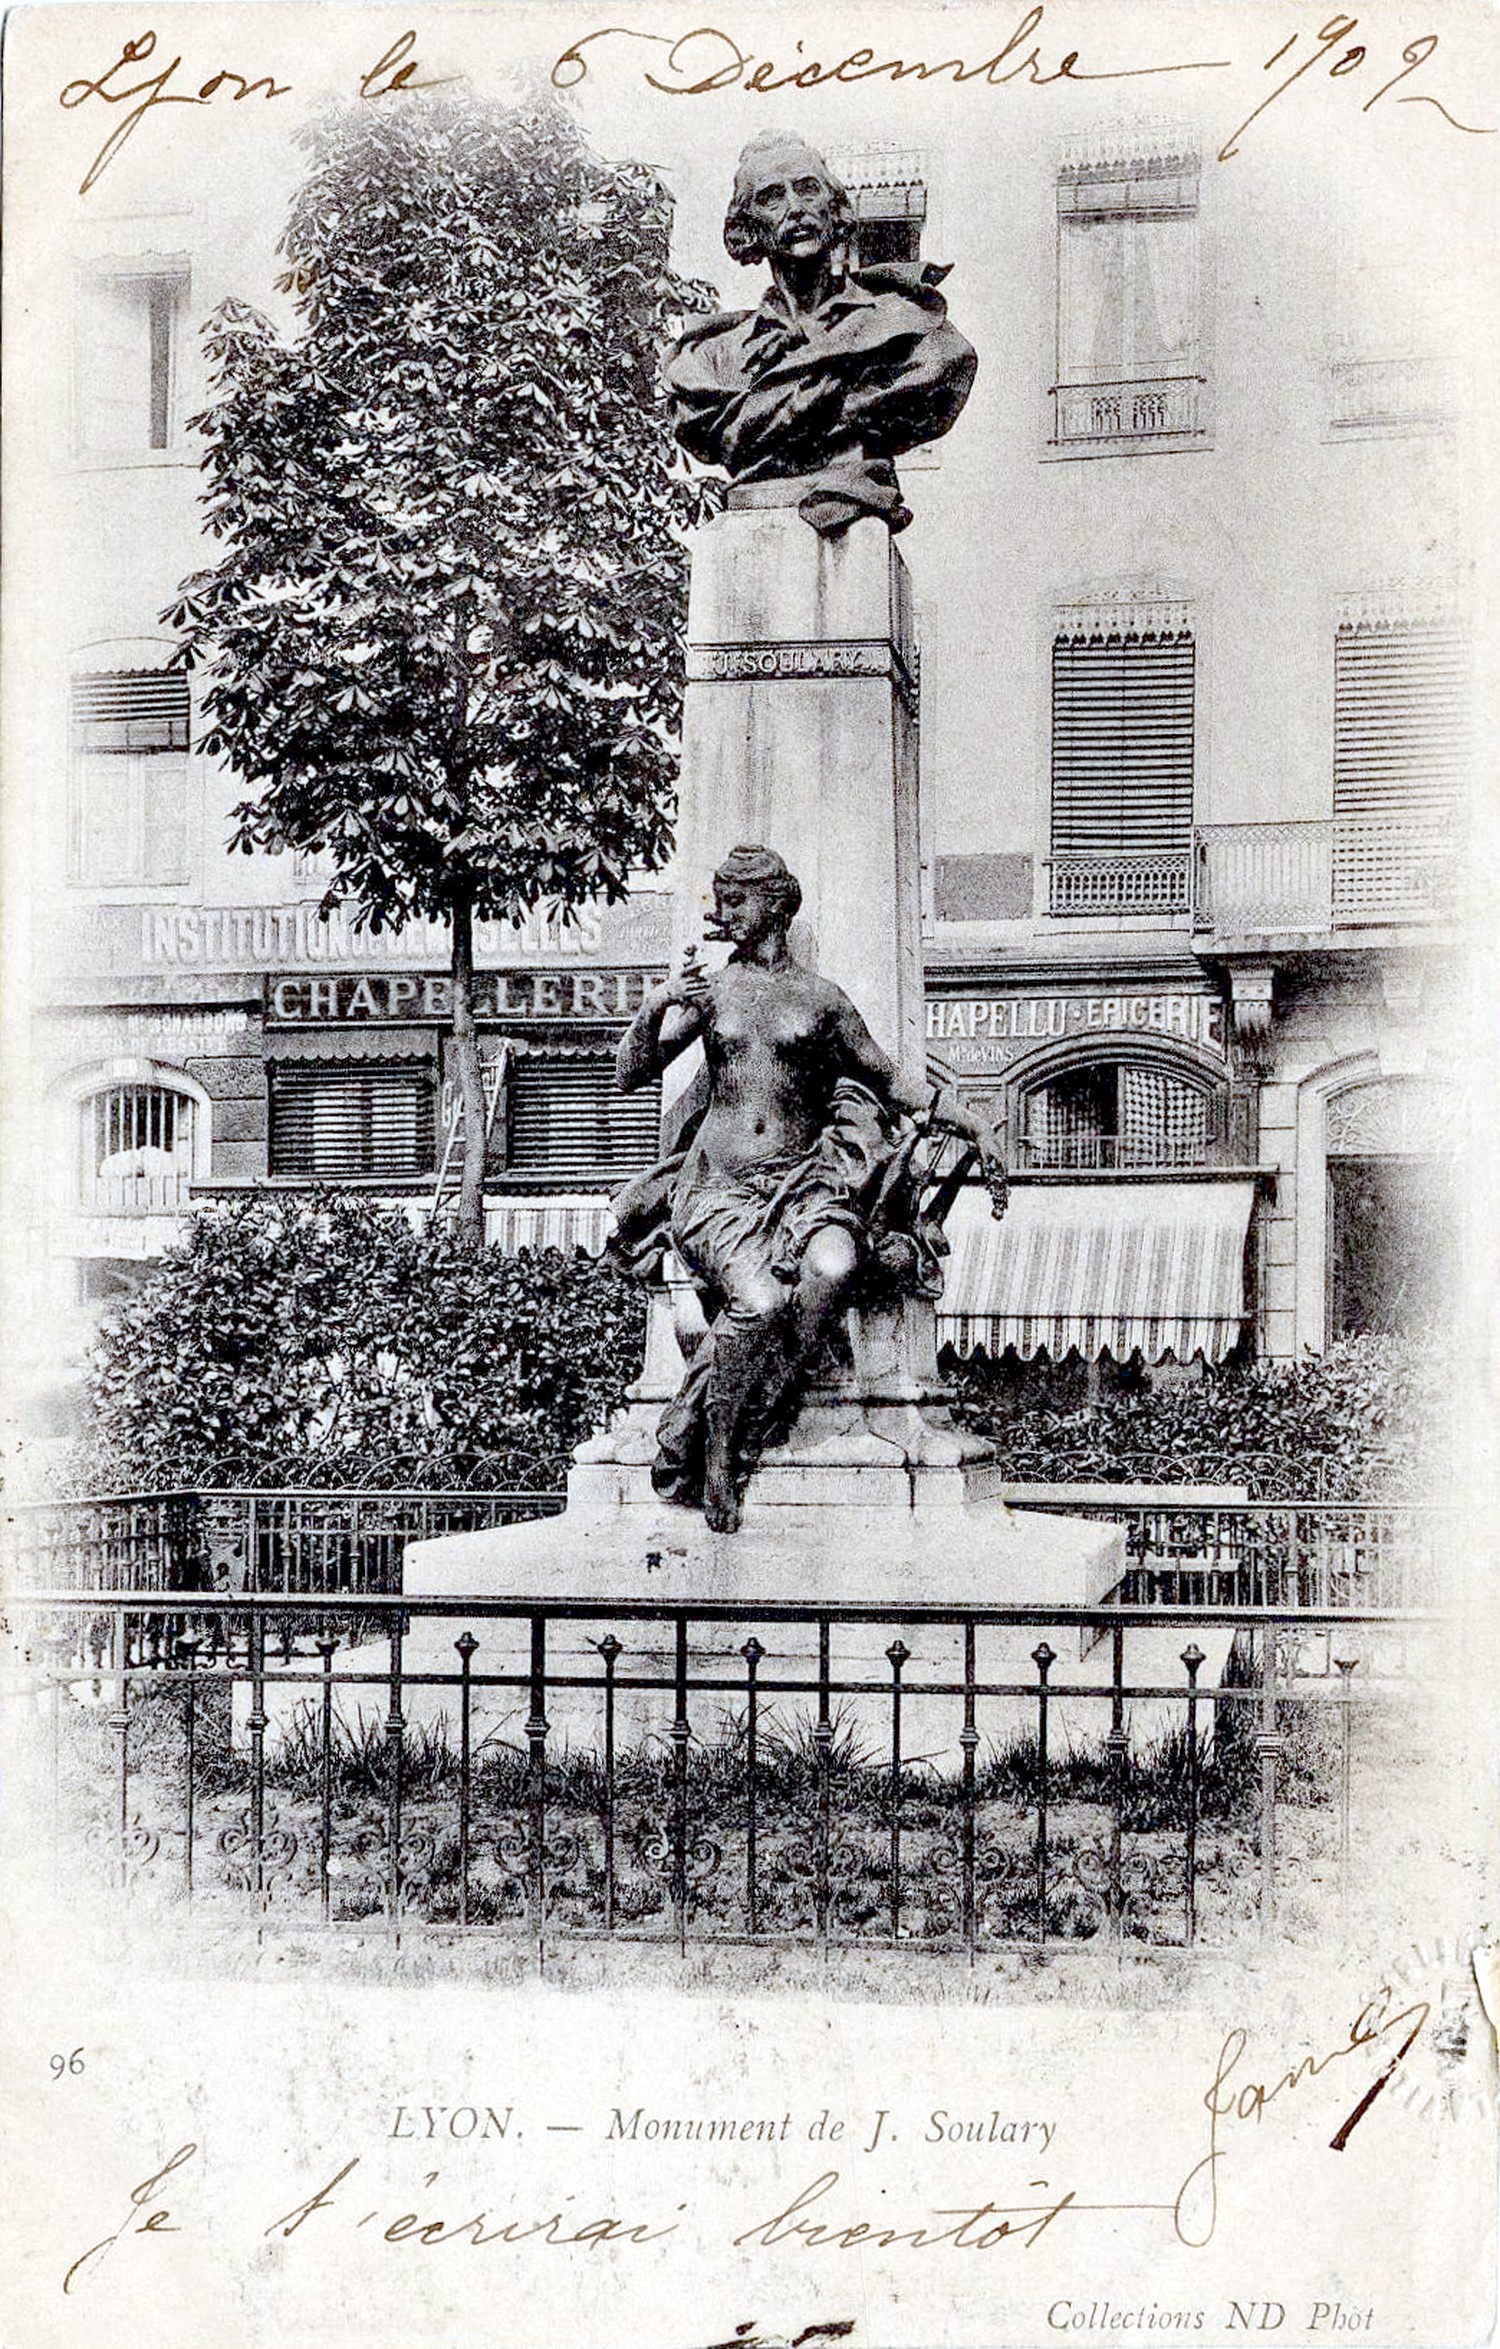 Lyon. - Monument de J. Soulary